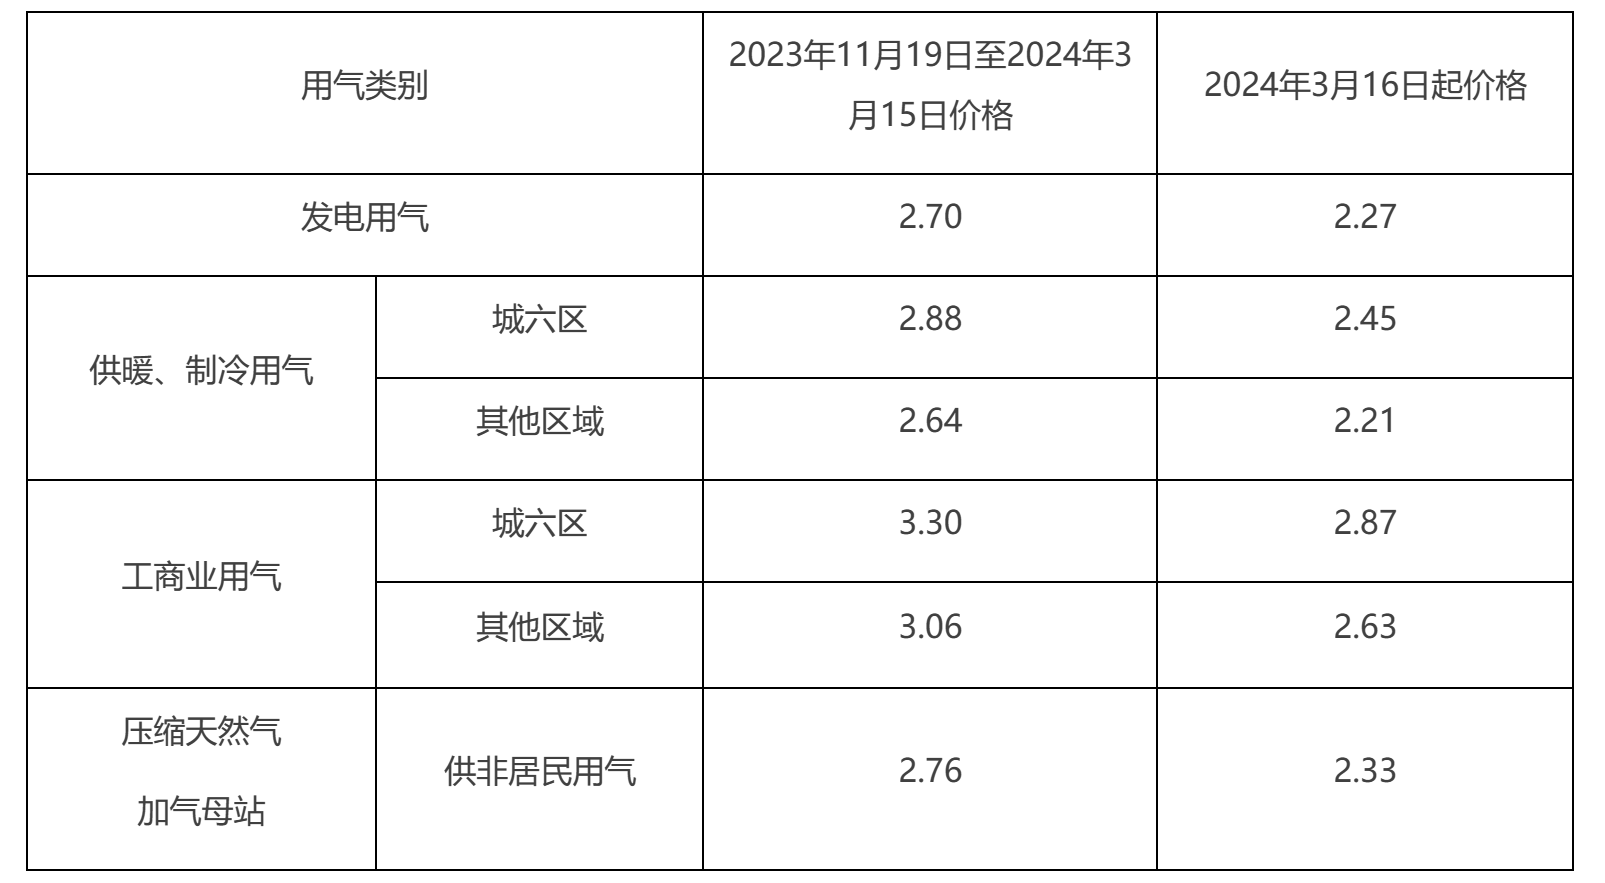 北京市非居民用管道天然气销售价格表